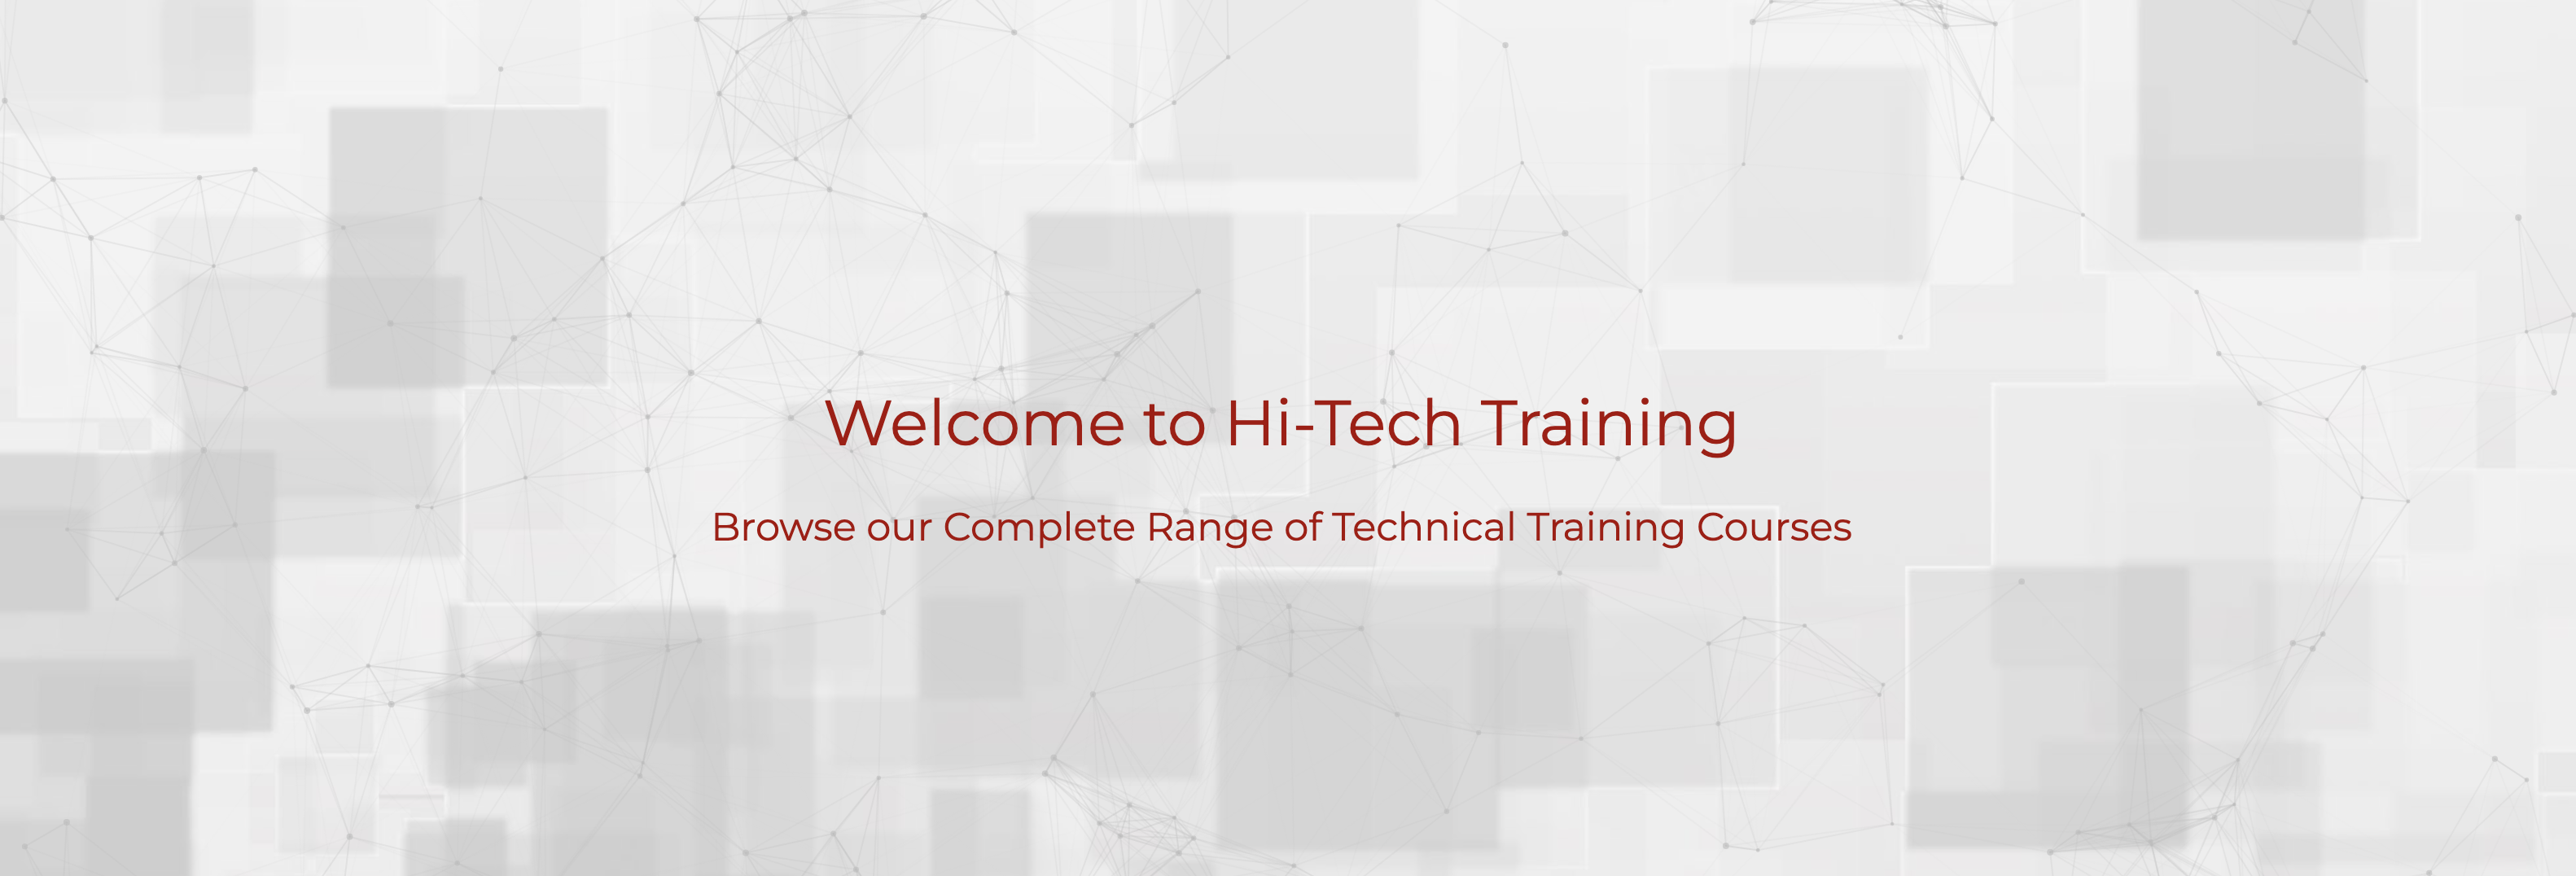 Hi-Tech Training